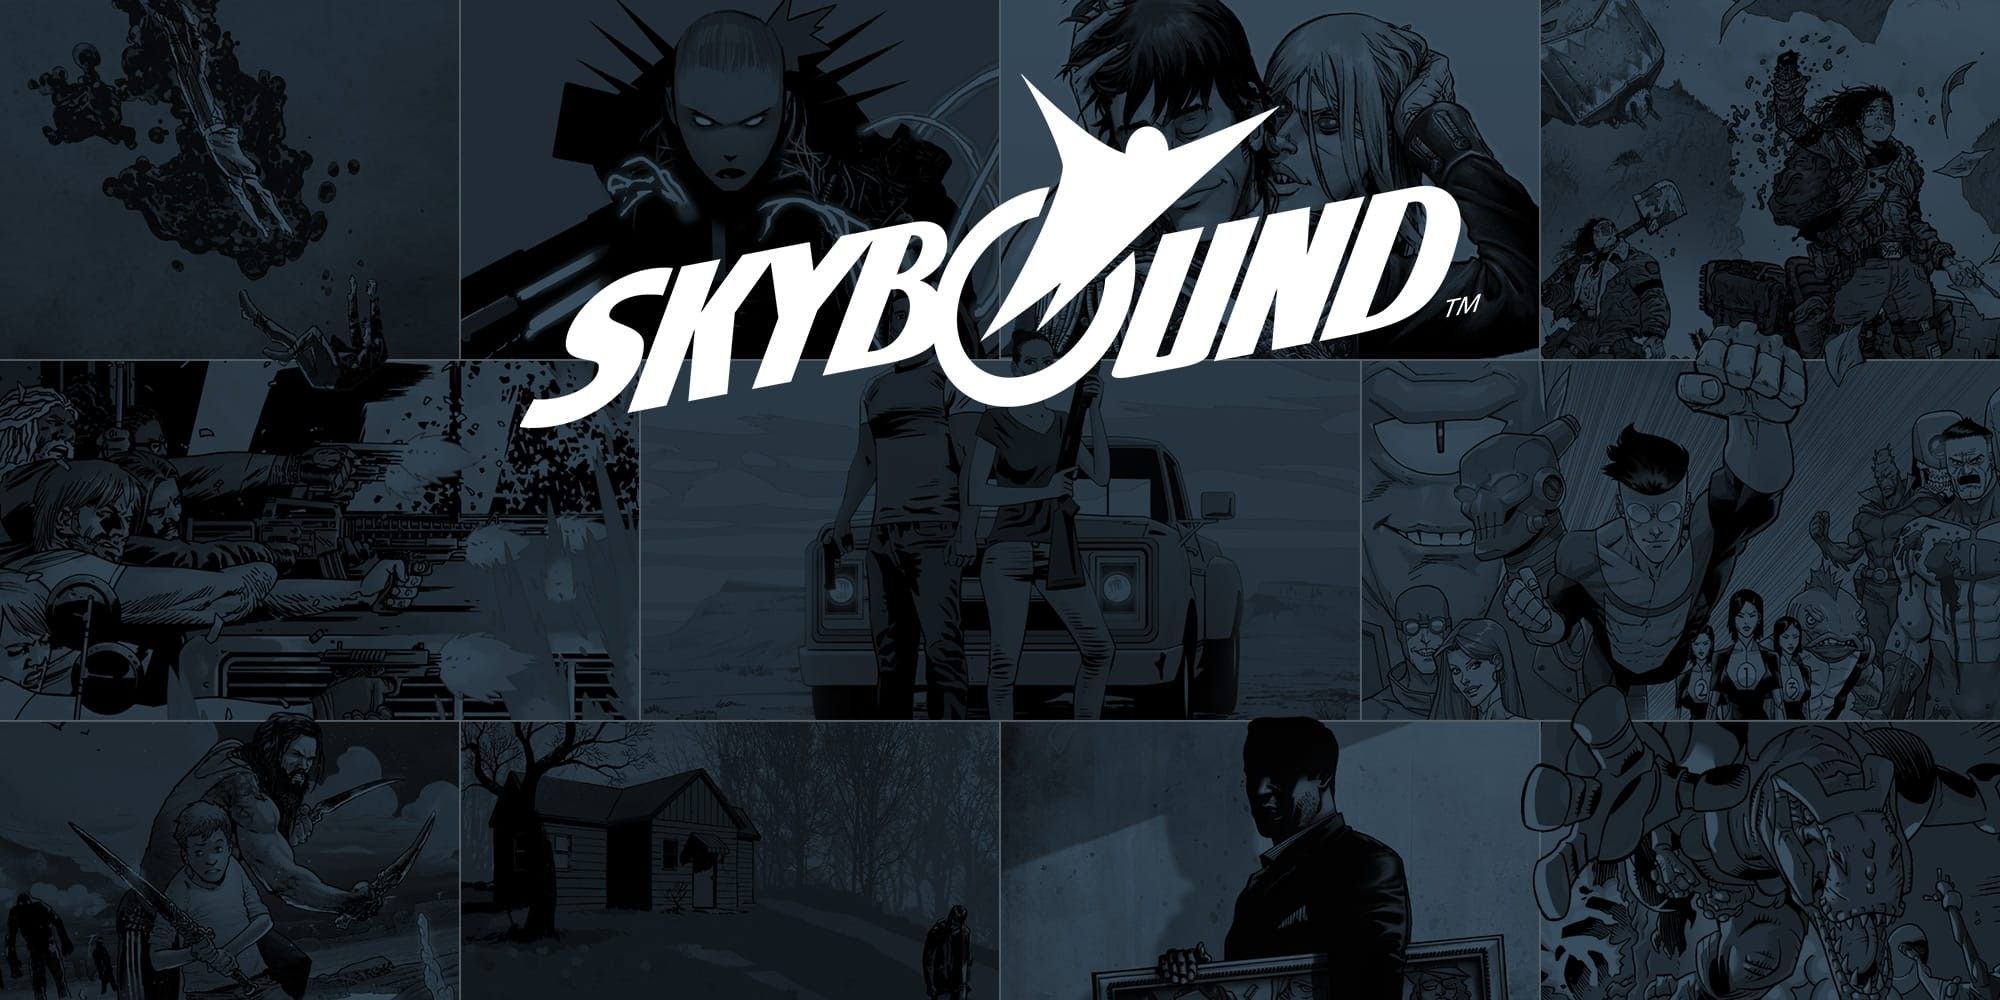 Skybound Games is Bringing DEATHS GAMBIT to Retail - Skybound